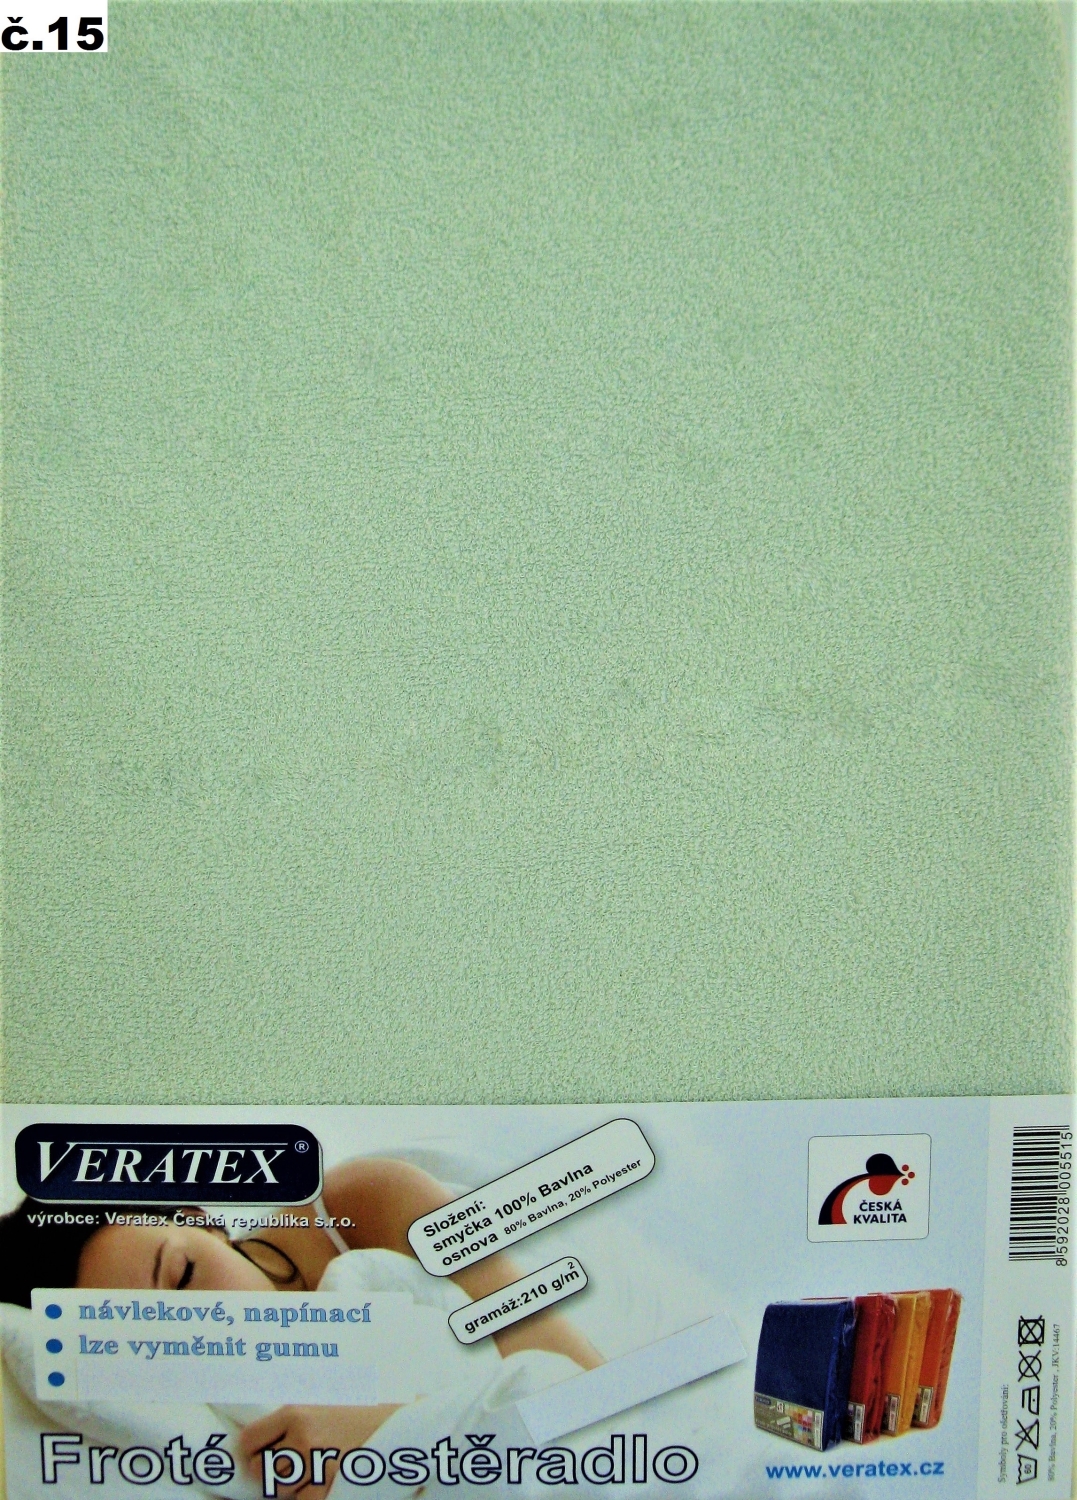 Veratex Froté prostěradlo na masážní lůžko 60x190 lehátko (č.15 sv.zelená) 60 x 190 cm